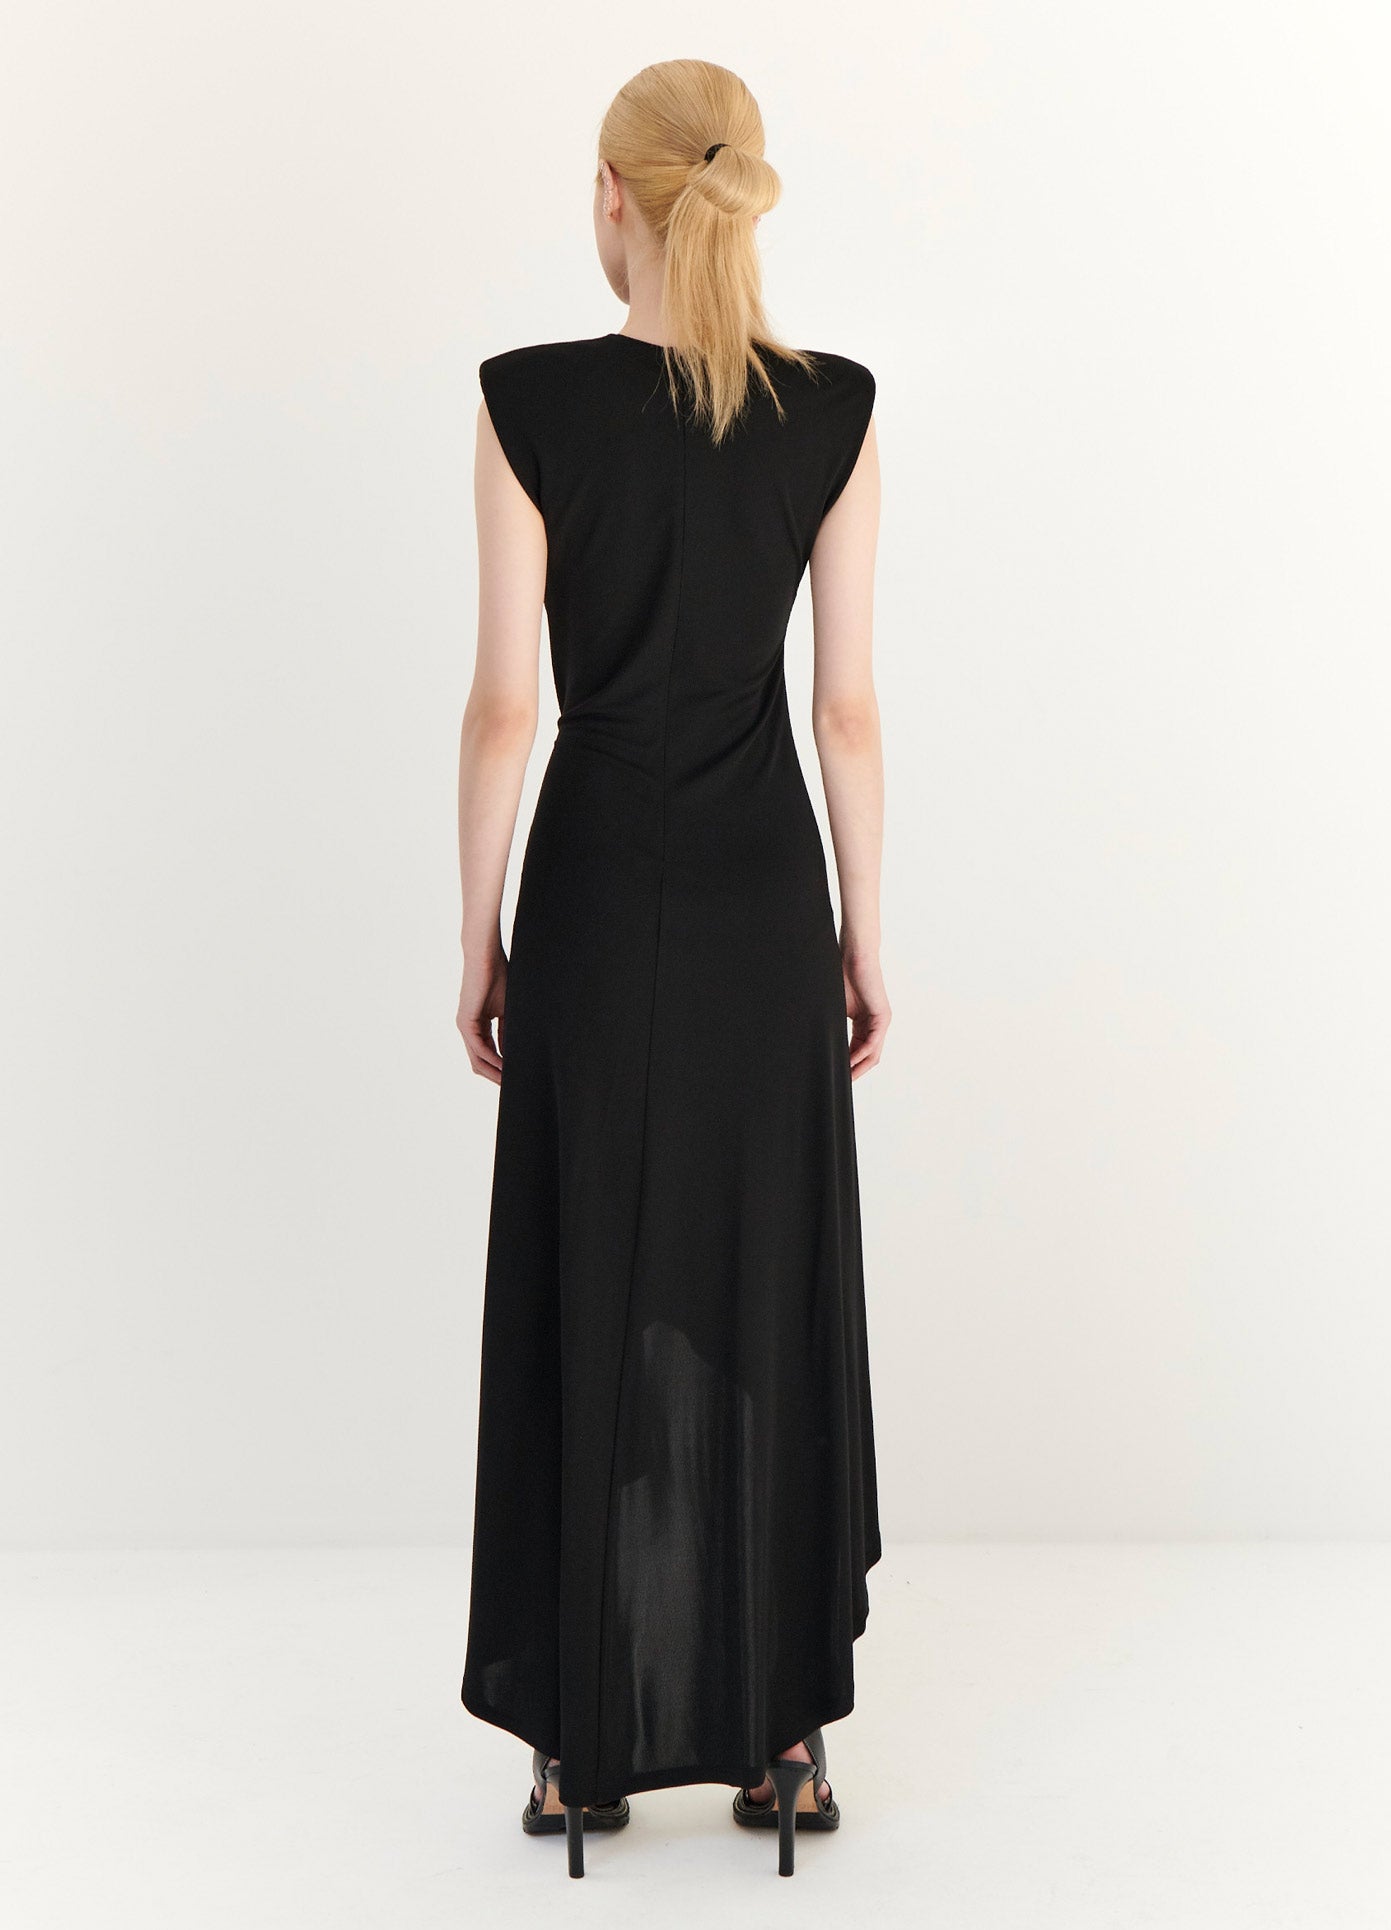 MONSE Gathered Power Shoulder Dress in Black on Model Full Back View